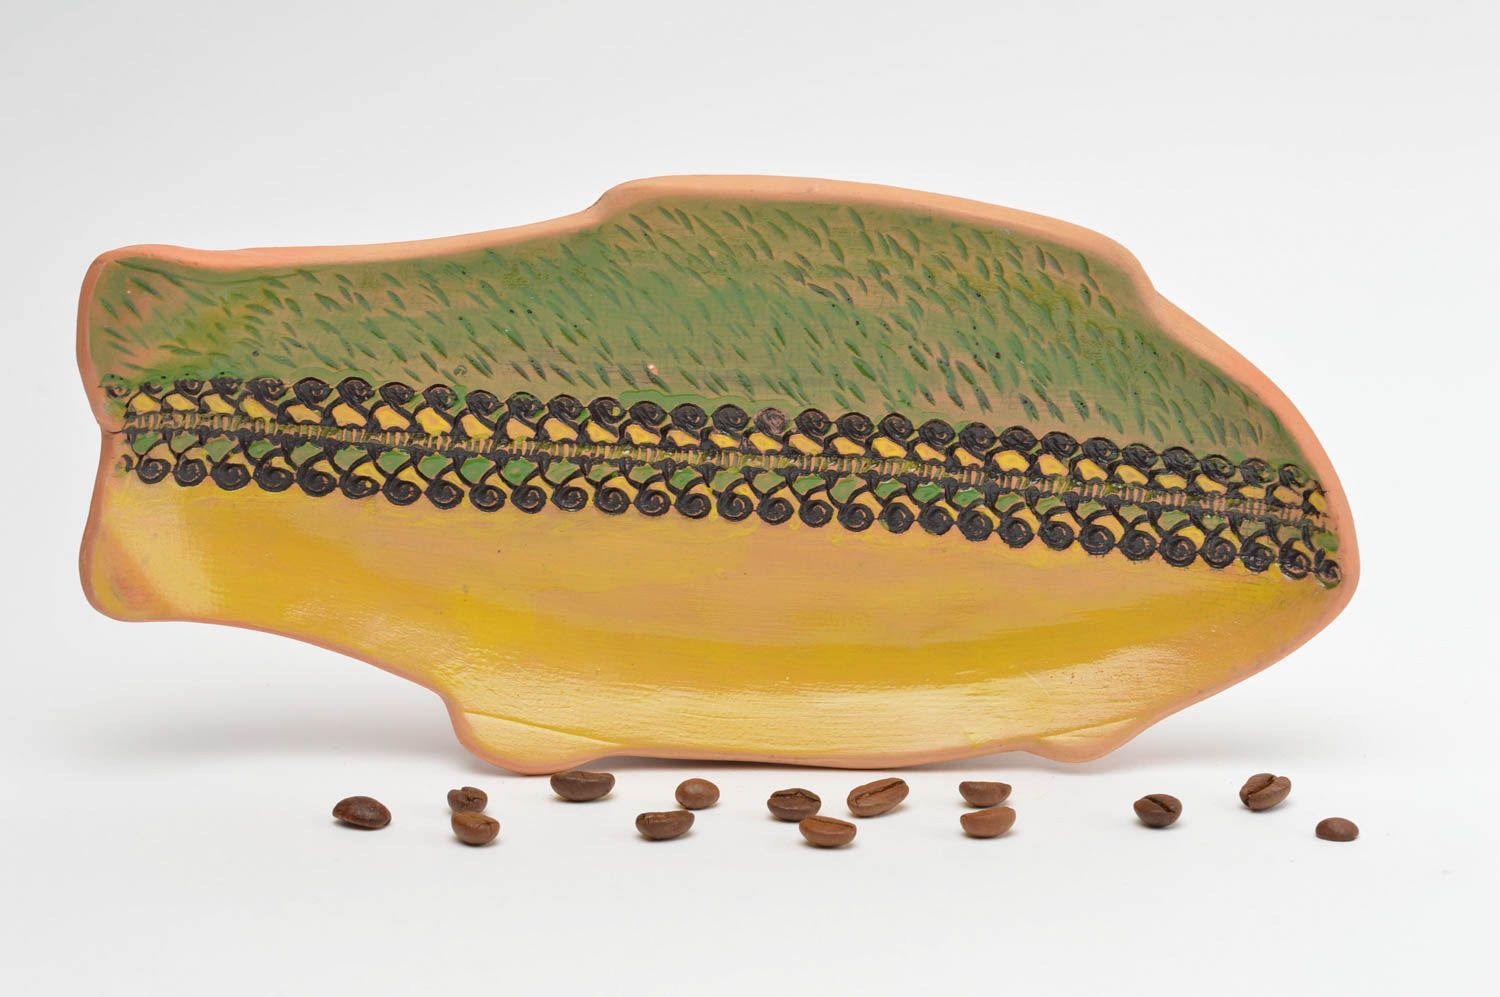 Тарелка декоративная из глины в виде рыбы желтая с зеленым цветная ручной работы фото 1